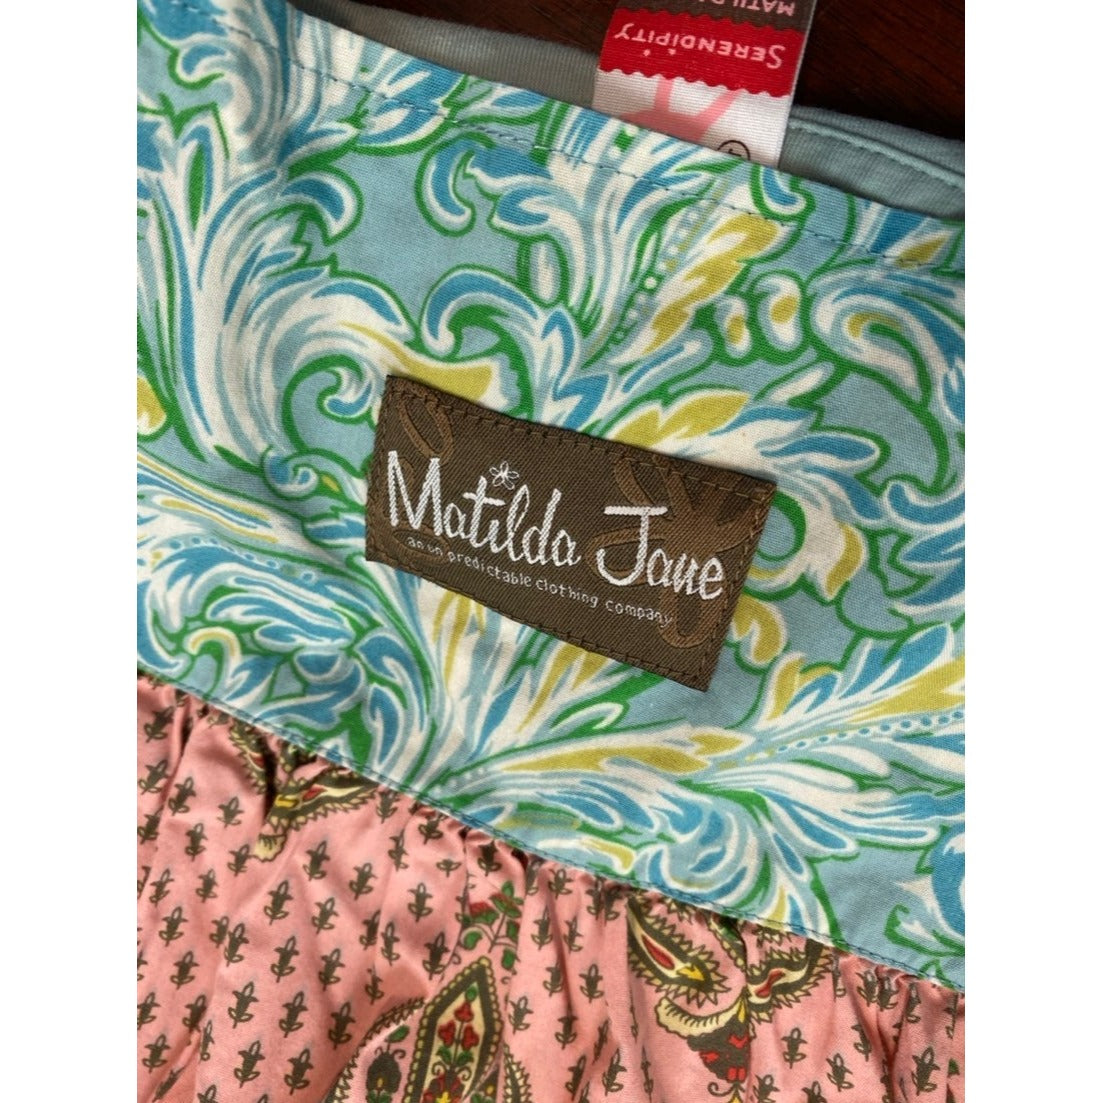 Size 4 Matilda Jane knot Dress tunic bundle